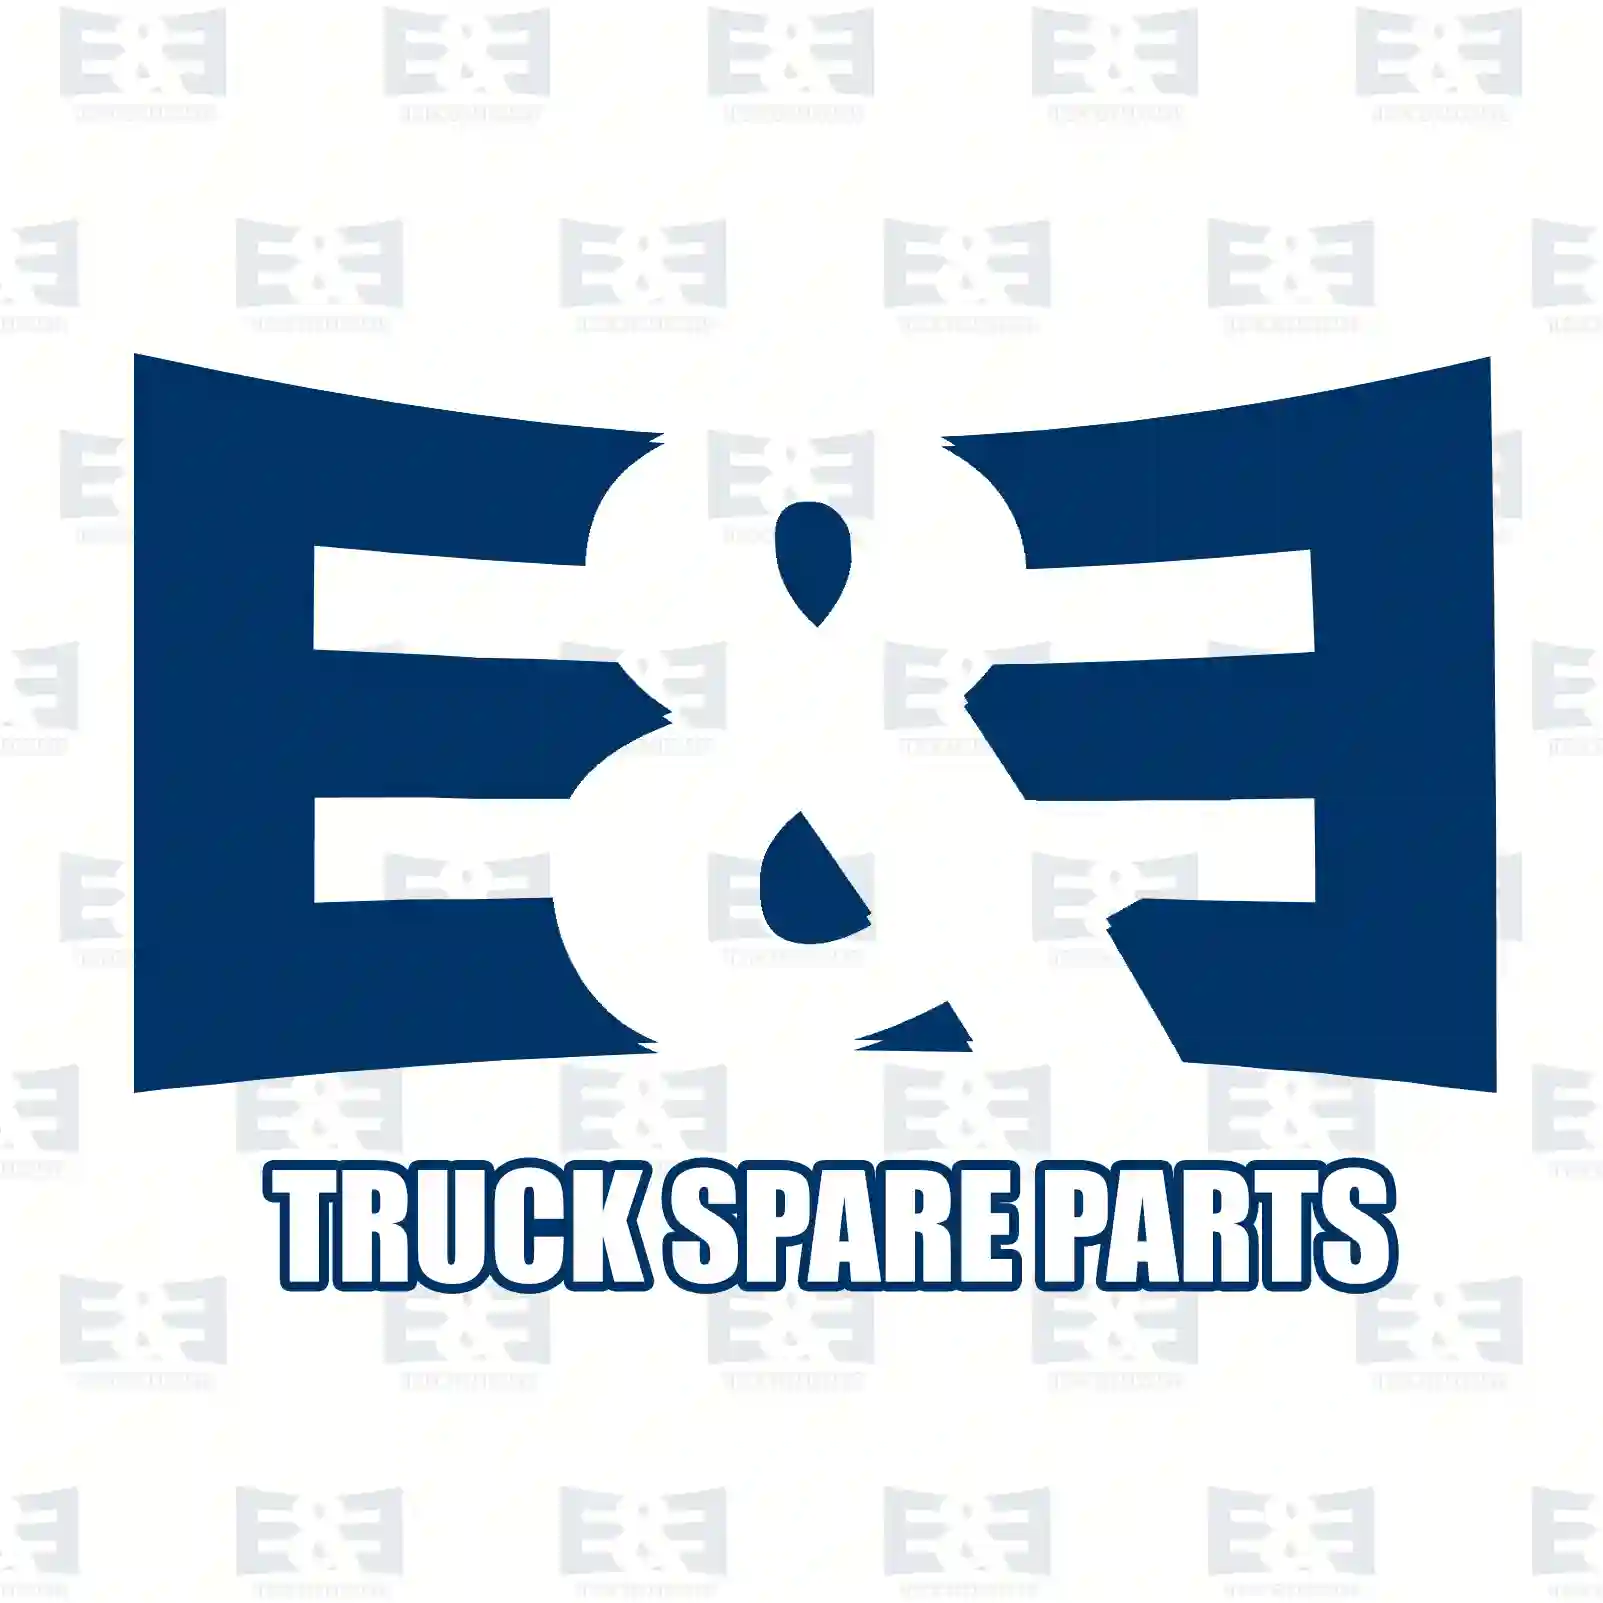 Air tank, 2E2296972, 81514010214, 81514010513, , , ||  2E2296972 E&E Truck Spare Parts | Truck Spare Parts, Auotomotive Spare Parts Air tank, 2E2296972, 81514010214, 81514010513, , , ||  2E2296972 E&E Truck Spare Parts | Truck Spare Parts, Auotomotive Spare Parts